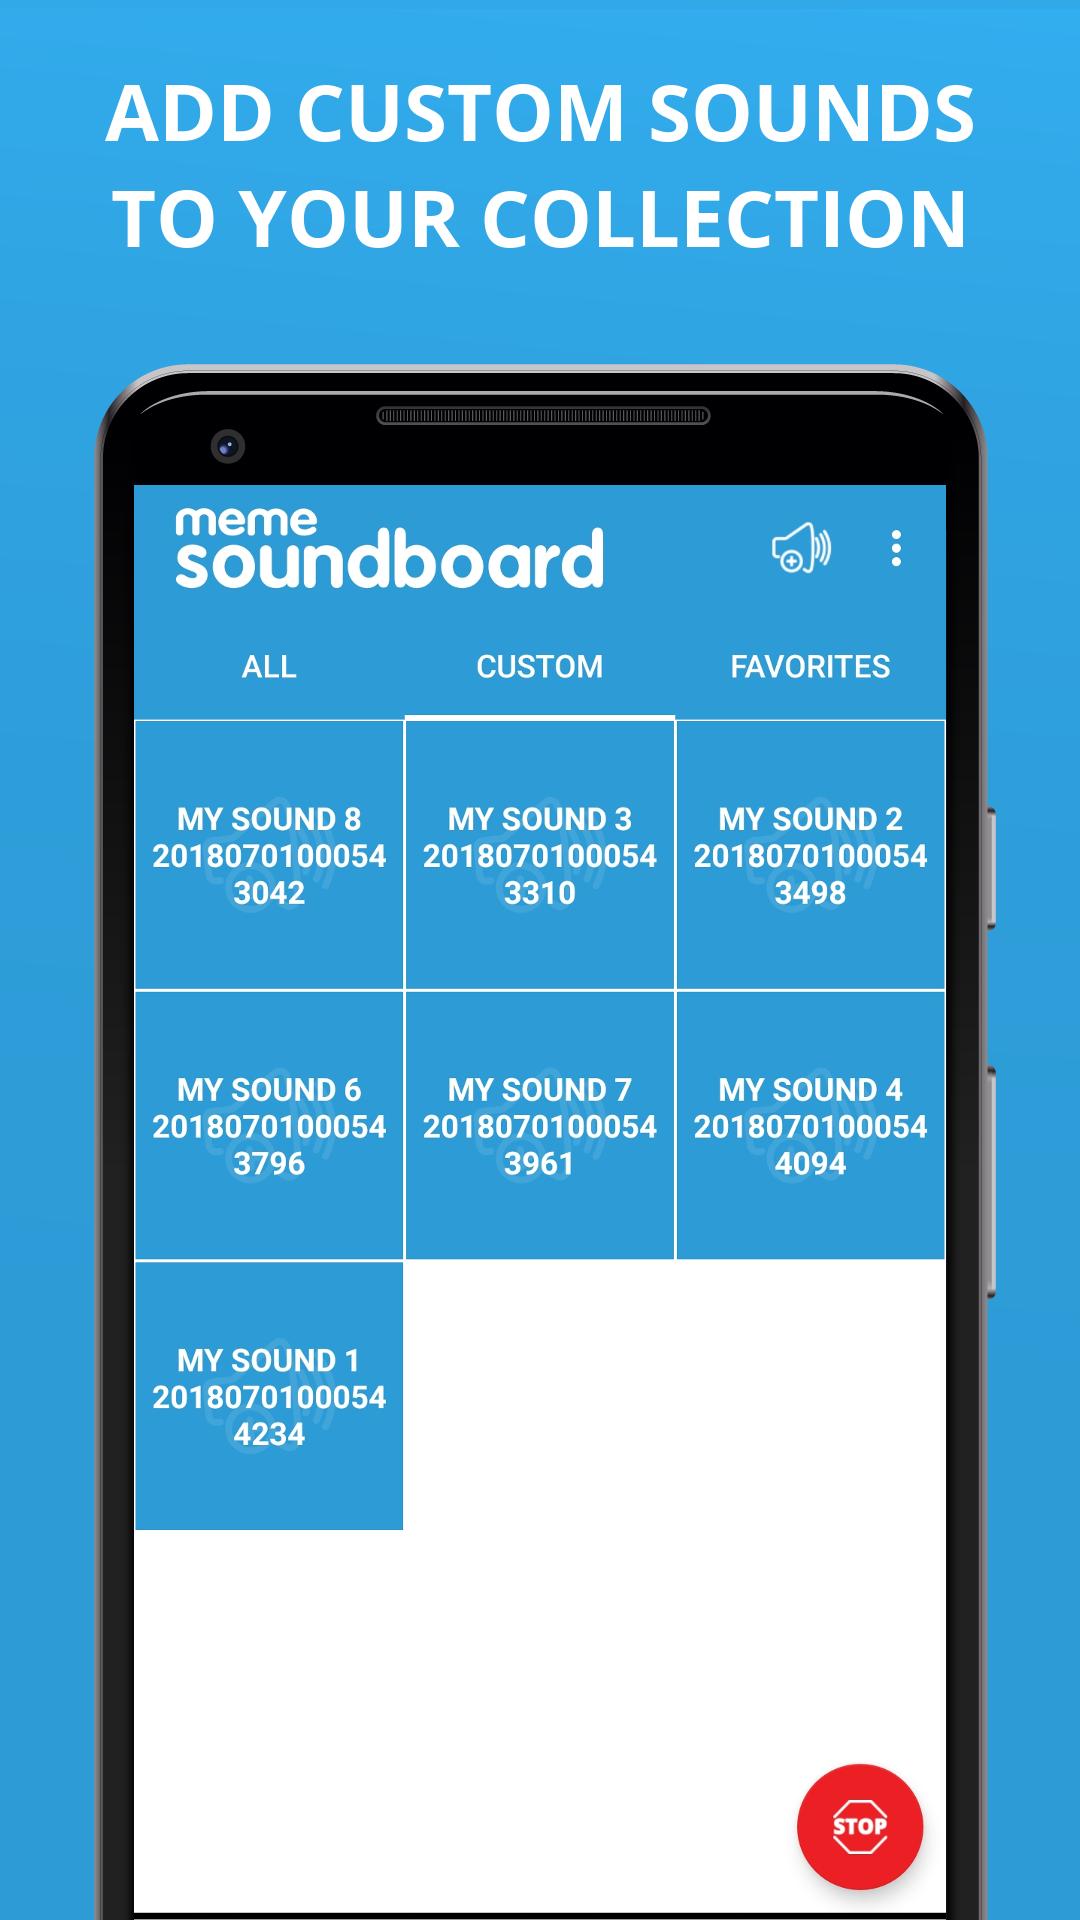 Meme Soundboard for Android - APK Download